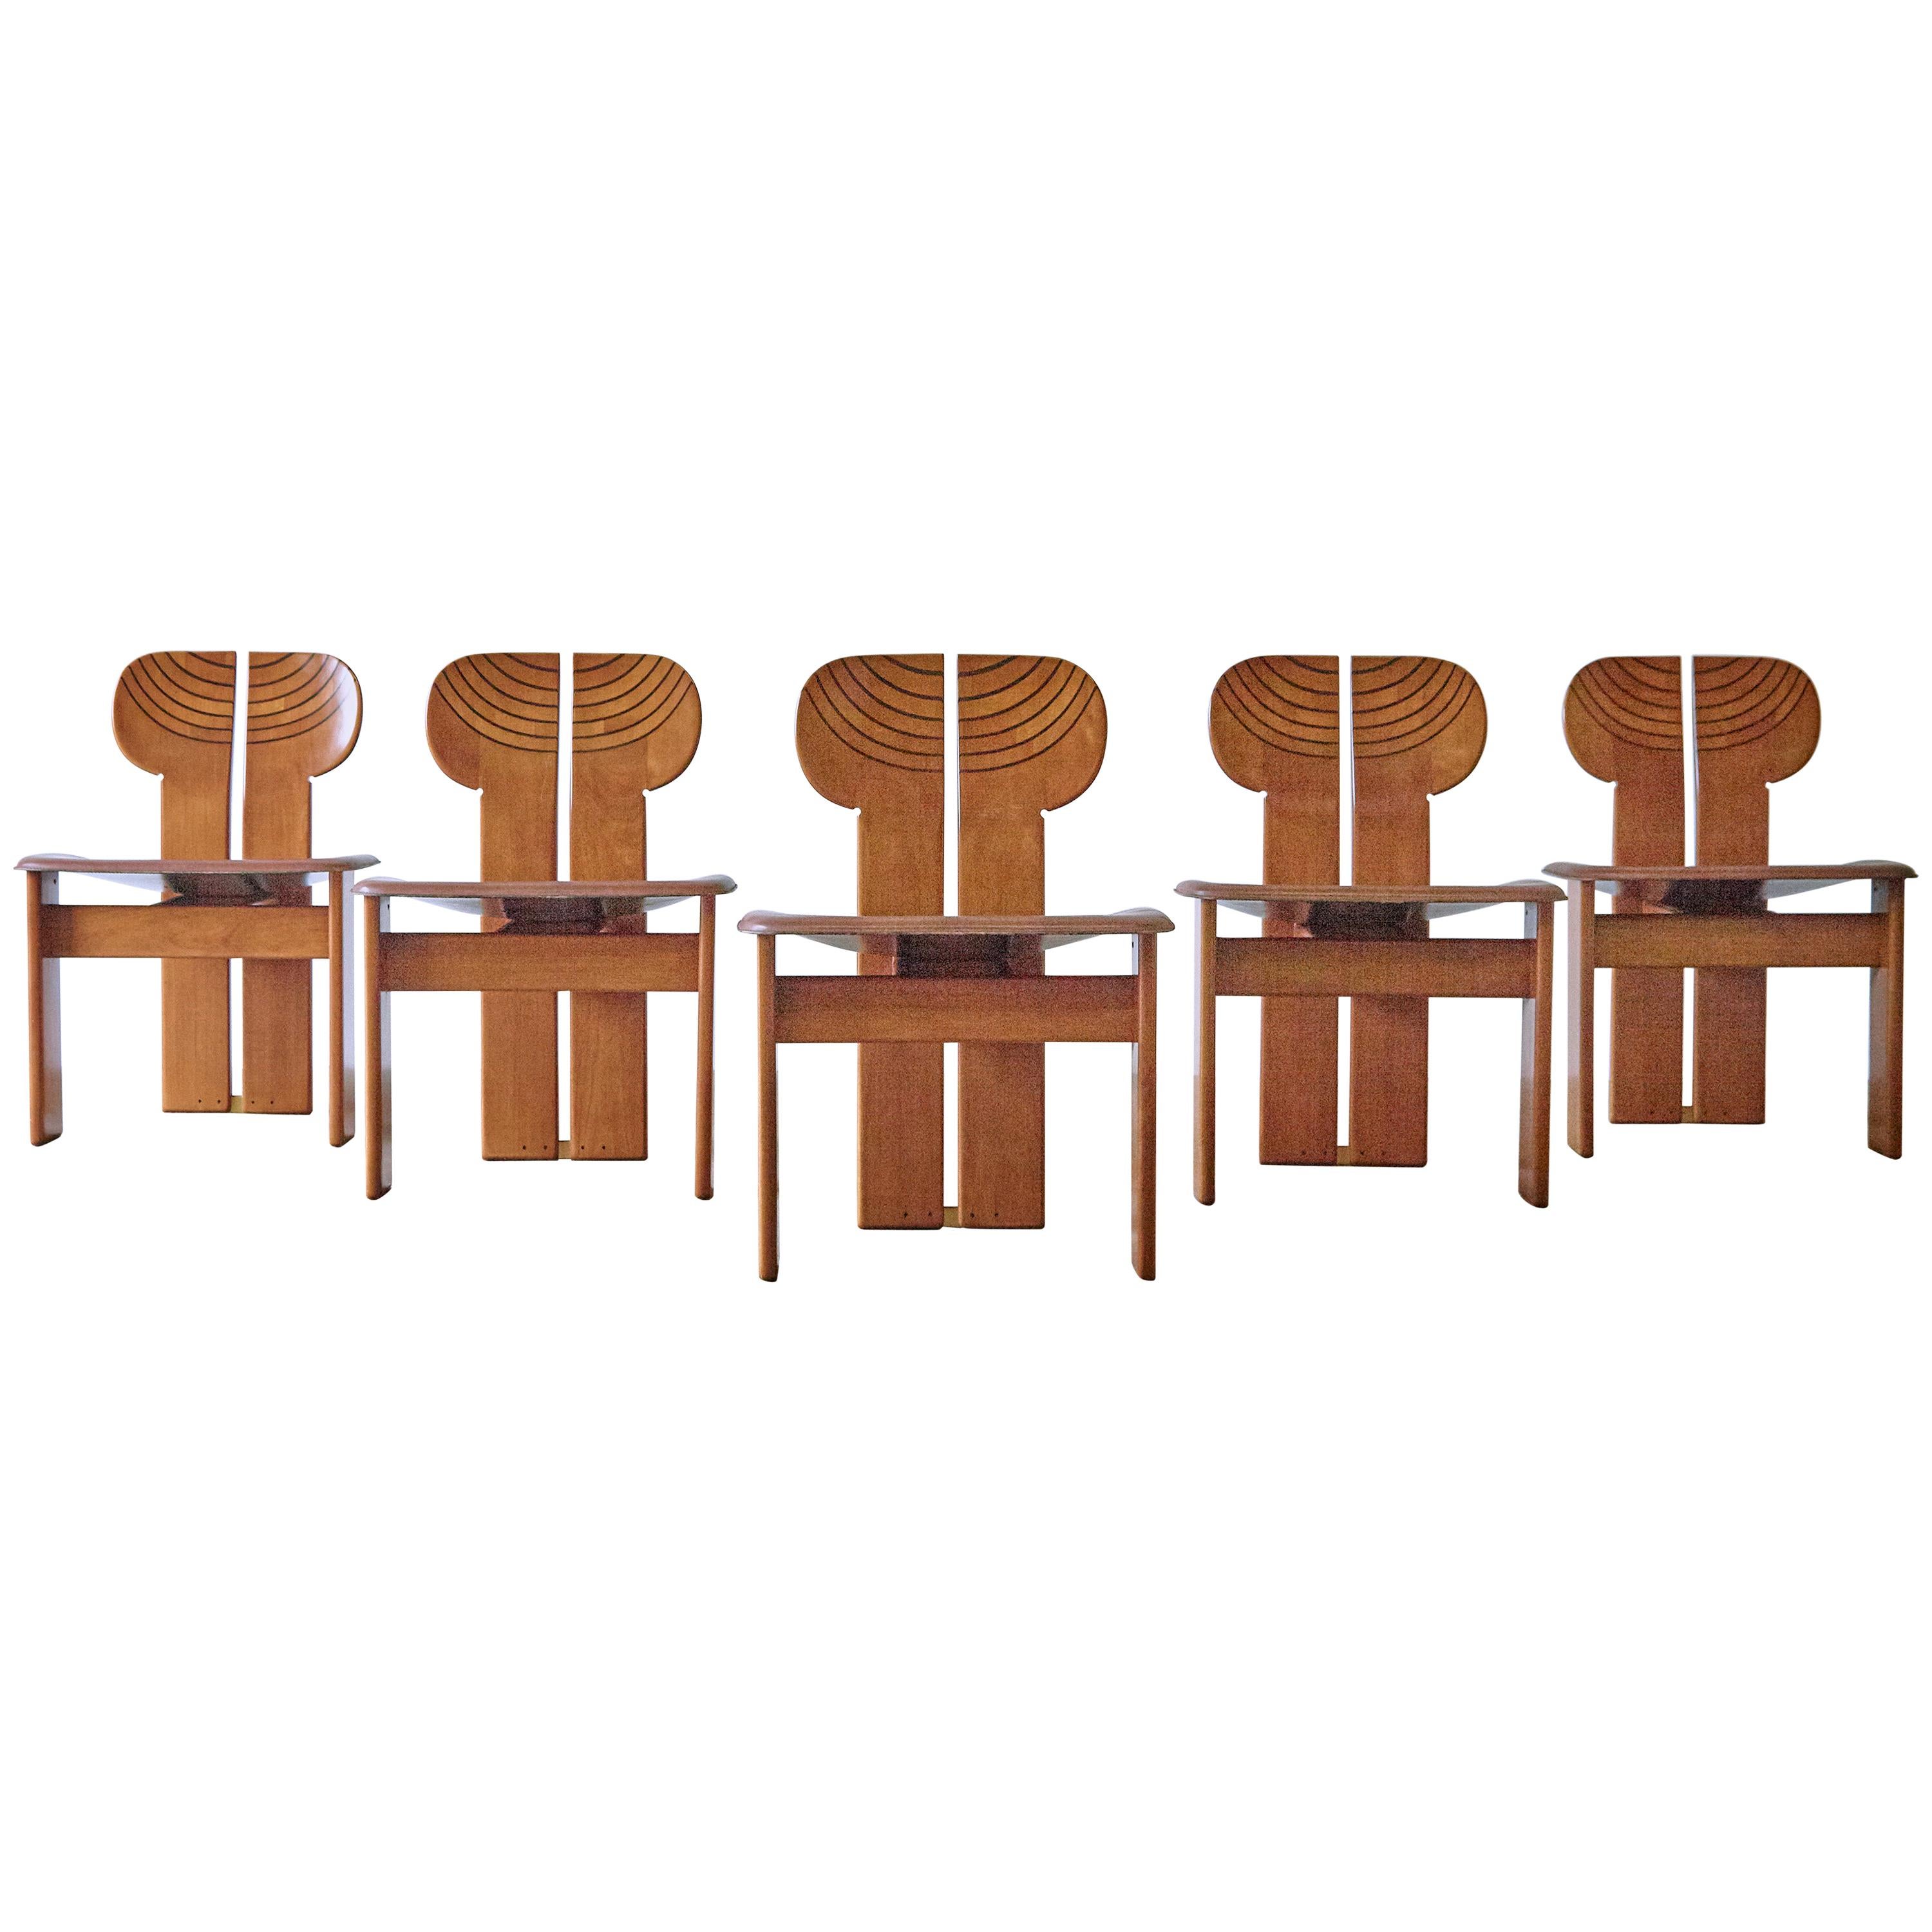 Set of Africa Chairs Afra & Tobia Scarpa Maxalto Artona Series Italy 1970s-1980s